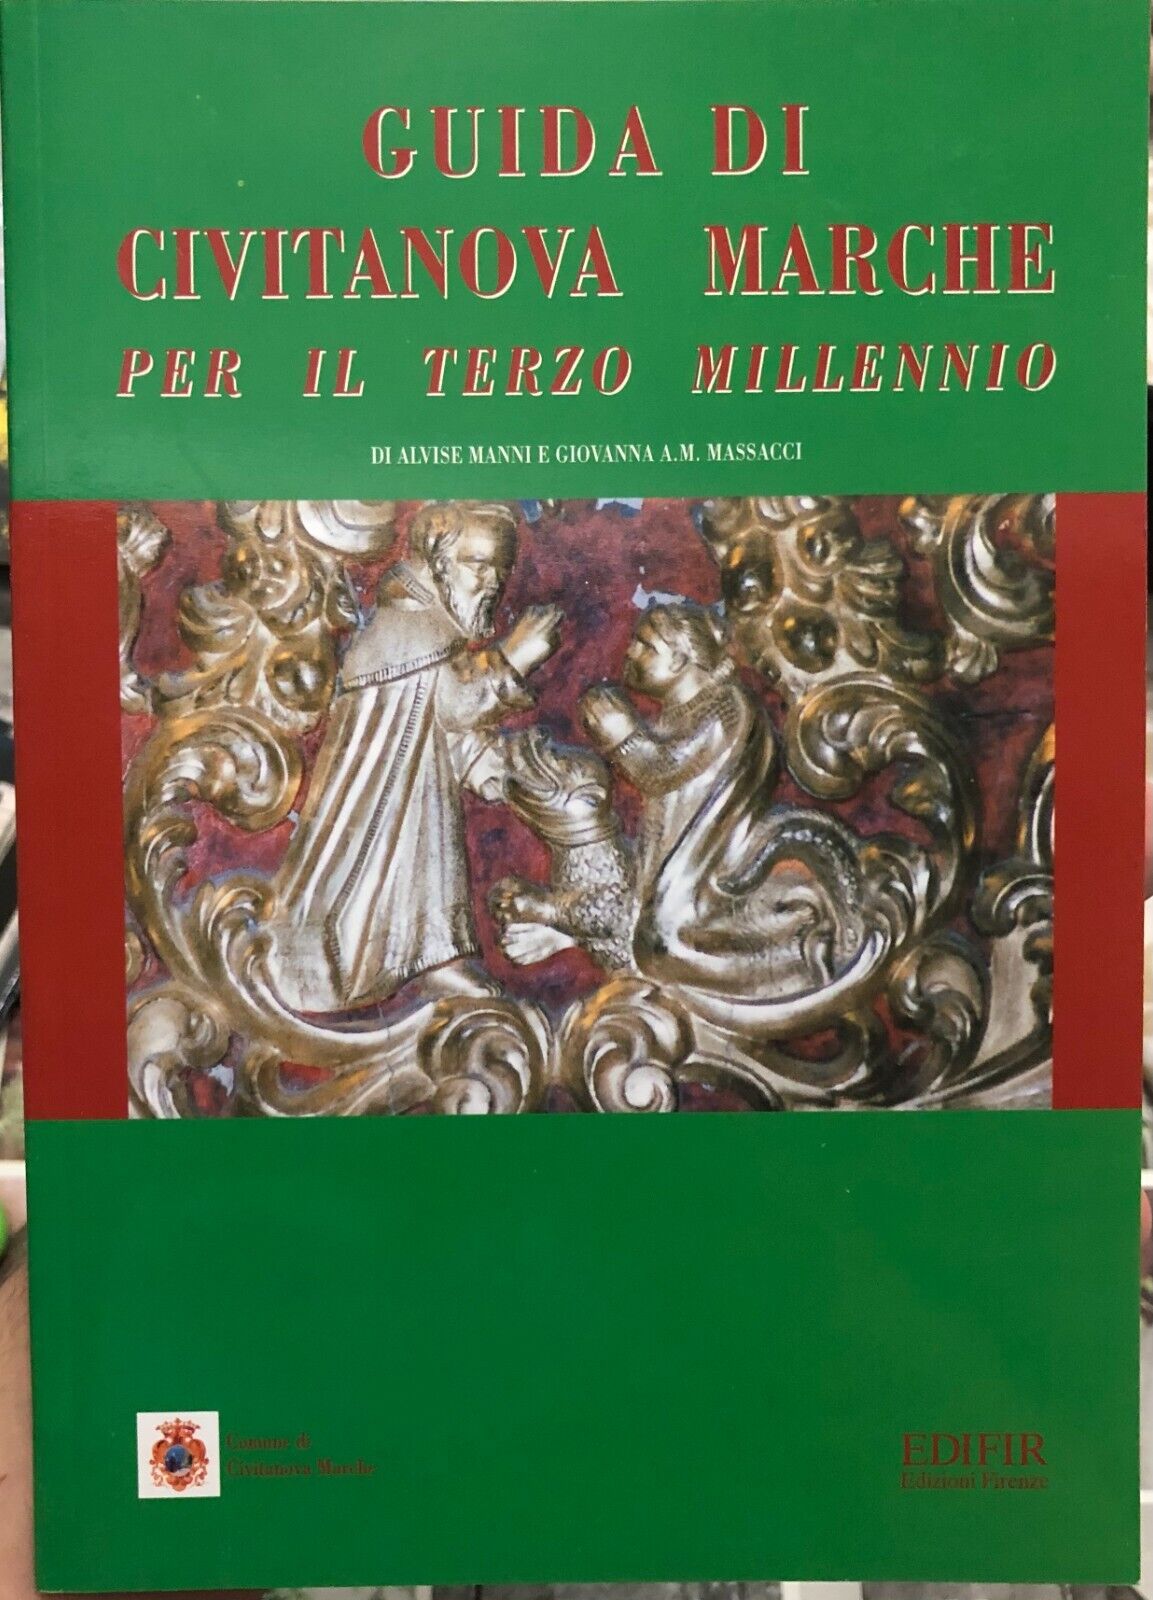 Guida di Civitanova Marche per il terzo millennio di Alvise Manni, Giovanna A.  libro usato